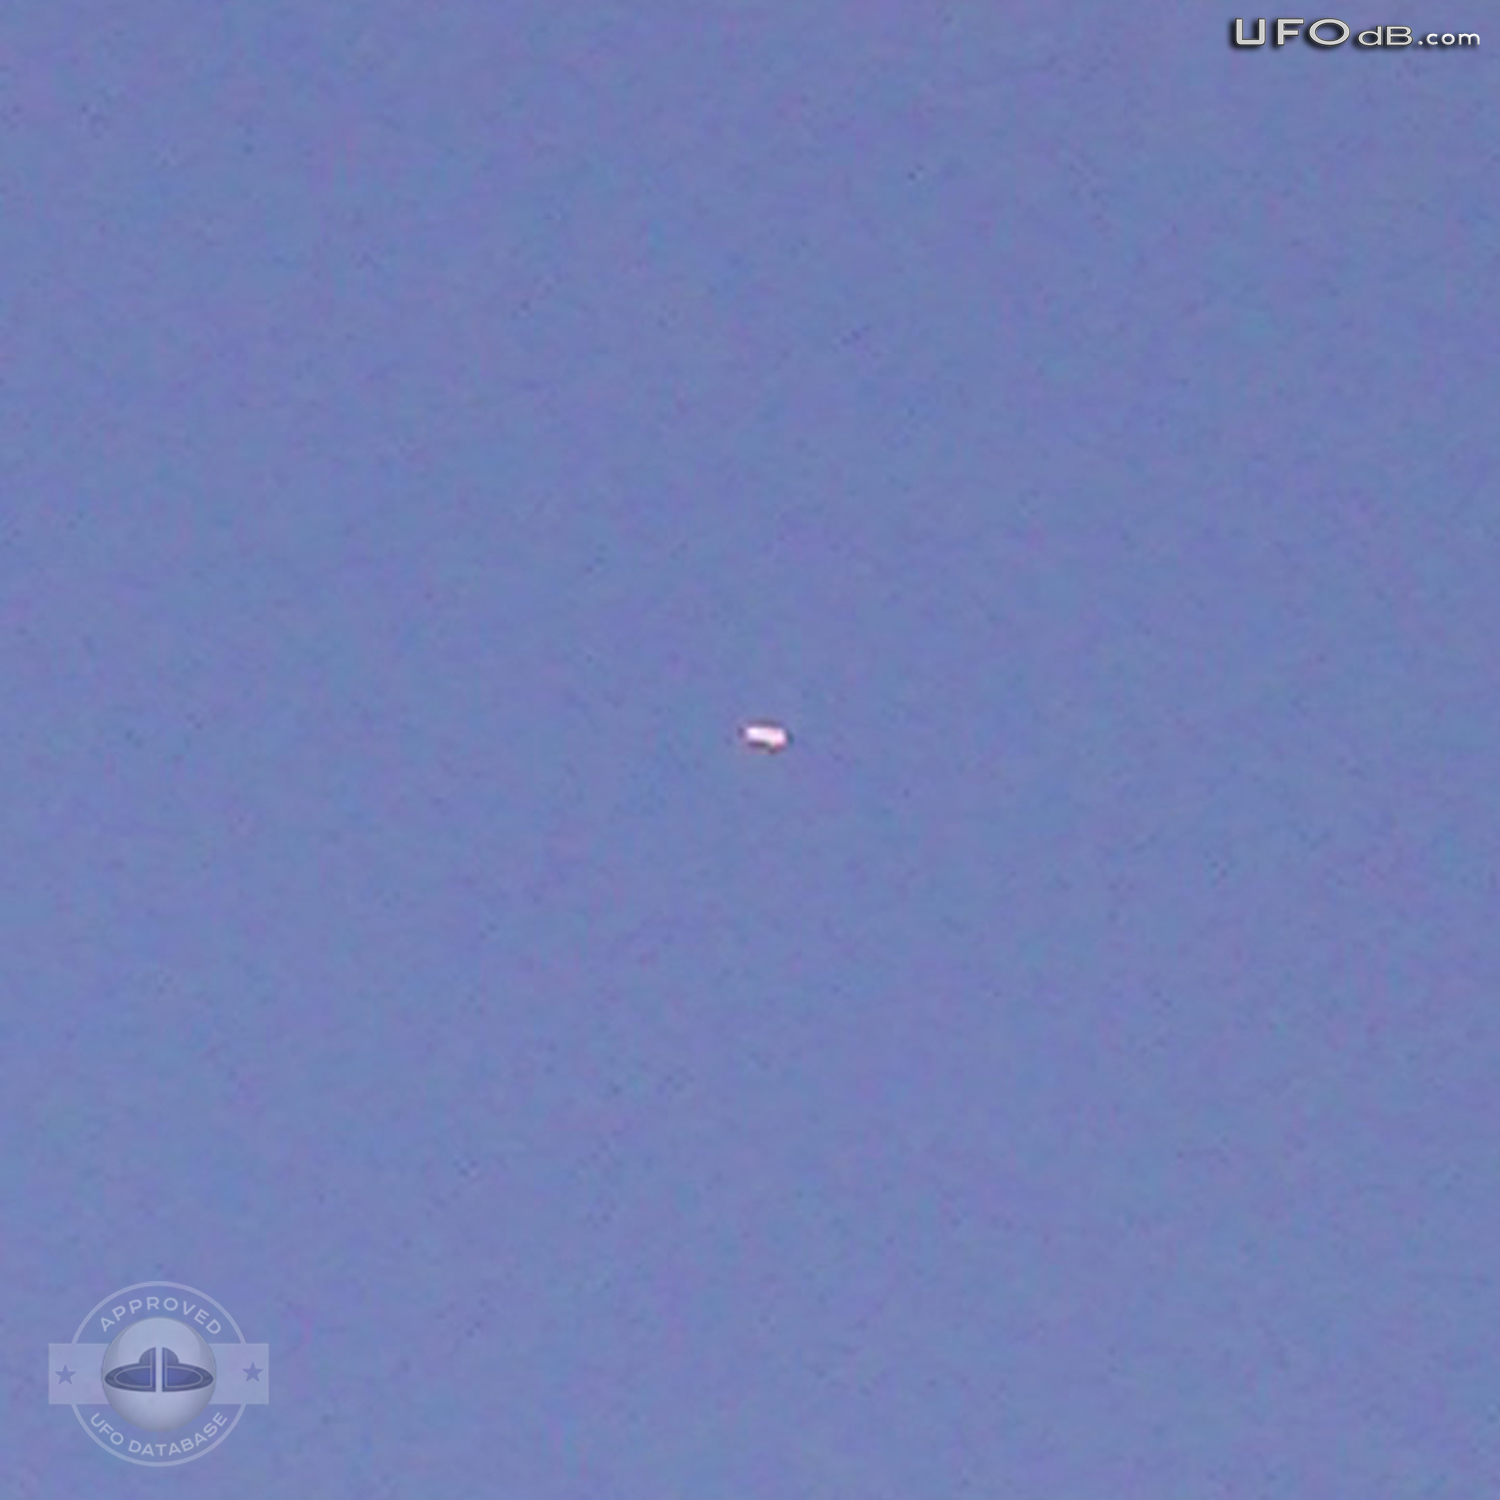 Bright White UFO near Tampa Airport | Florida, USA | February 12 2011 UFO Picture #298-2